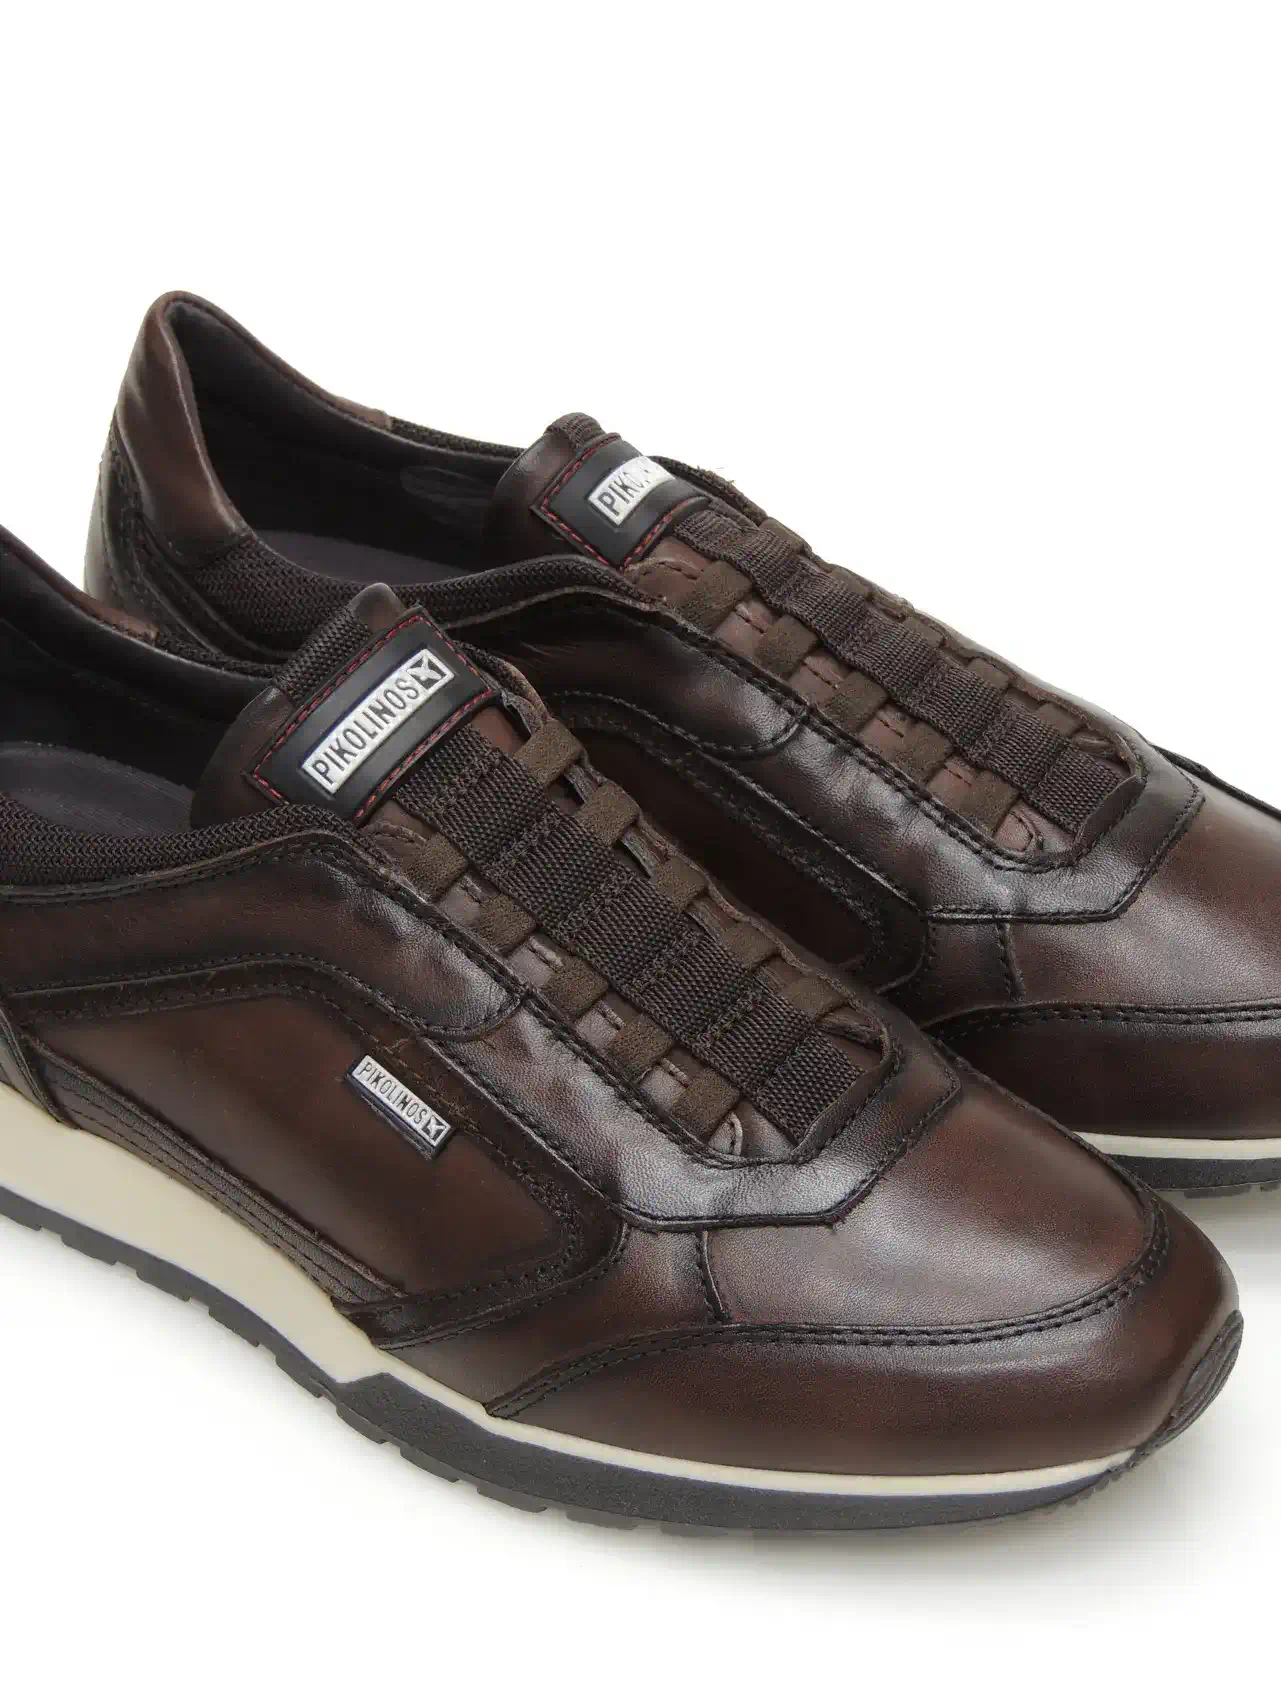 sneakers--pikolinos-m5n-6247c1-piel-marron